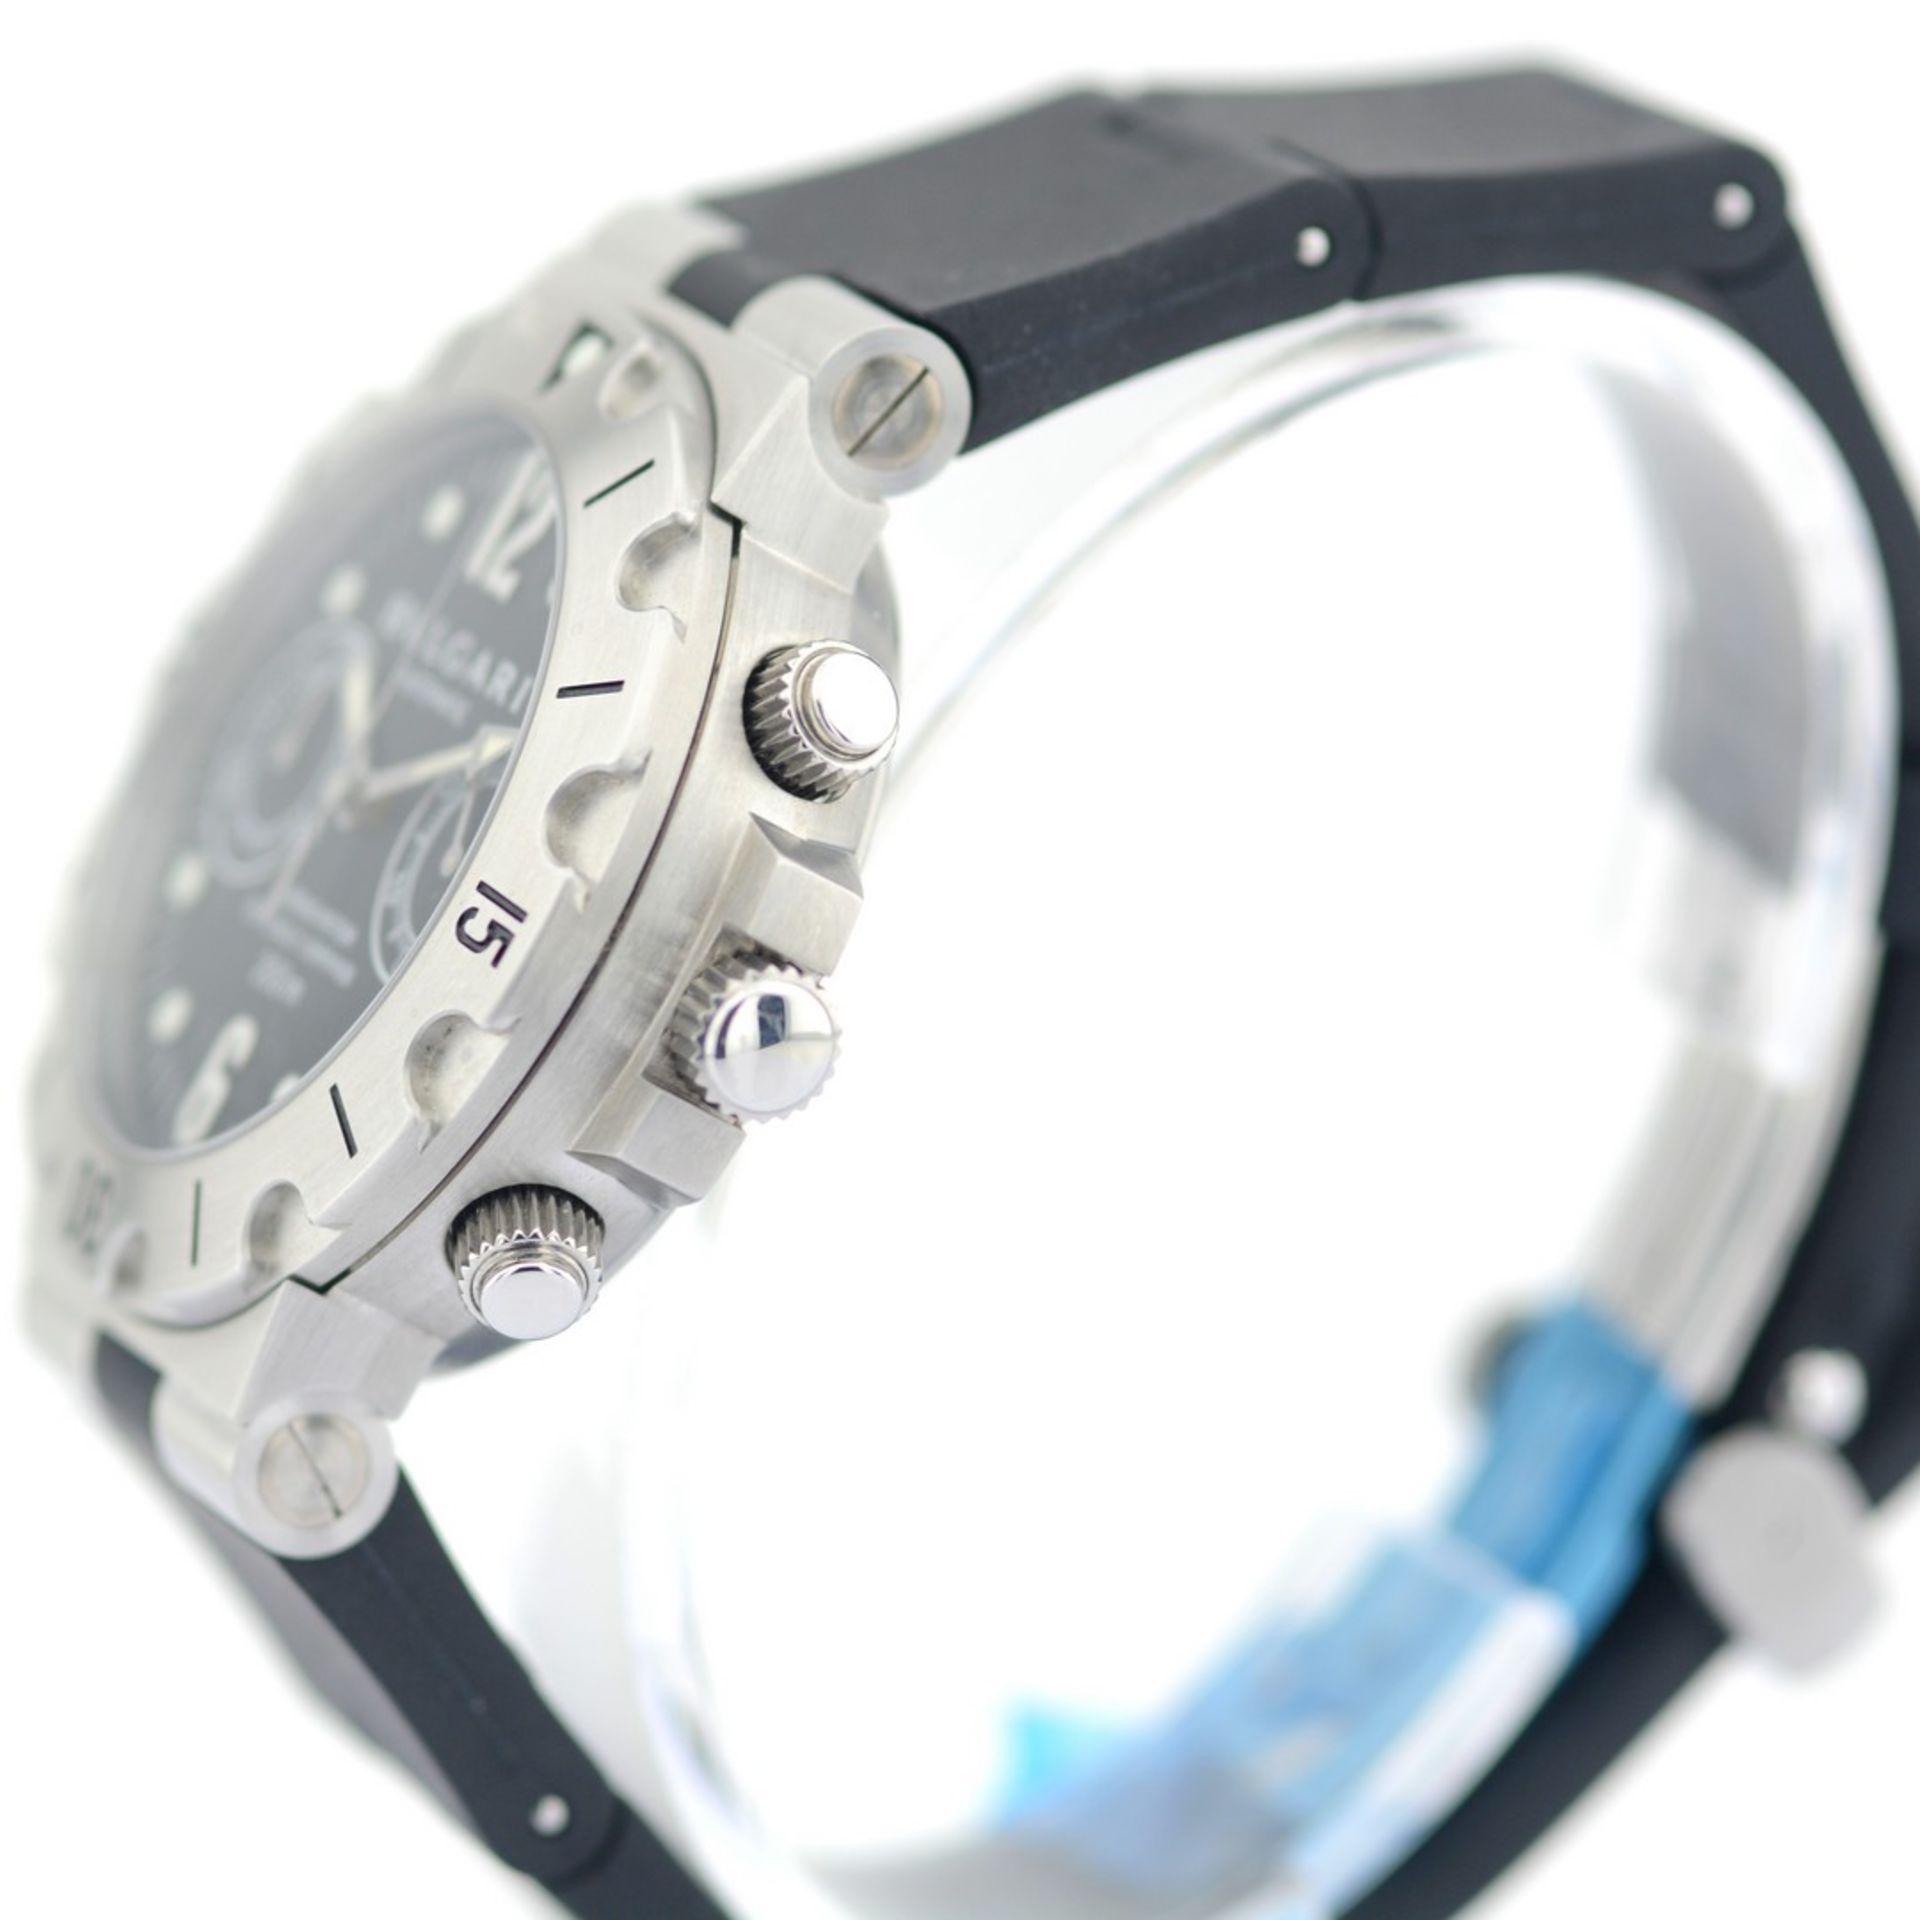 Bulgari / Scuba Chronograph Unworn SCB38S - Gentlemen's Steel Wrist Watch - Image 4 of 10